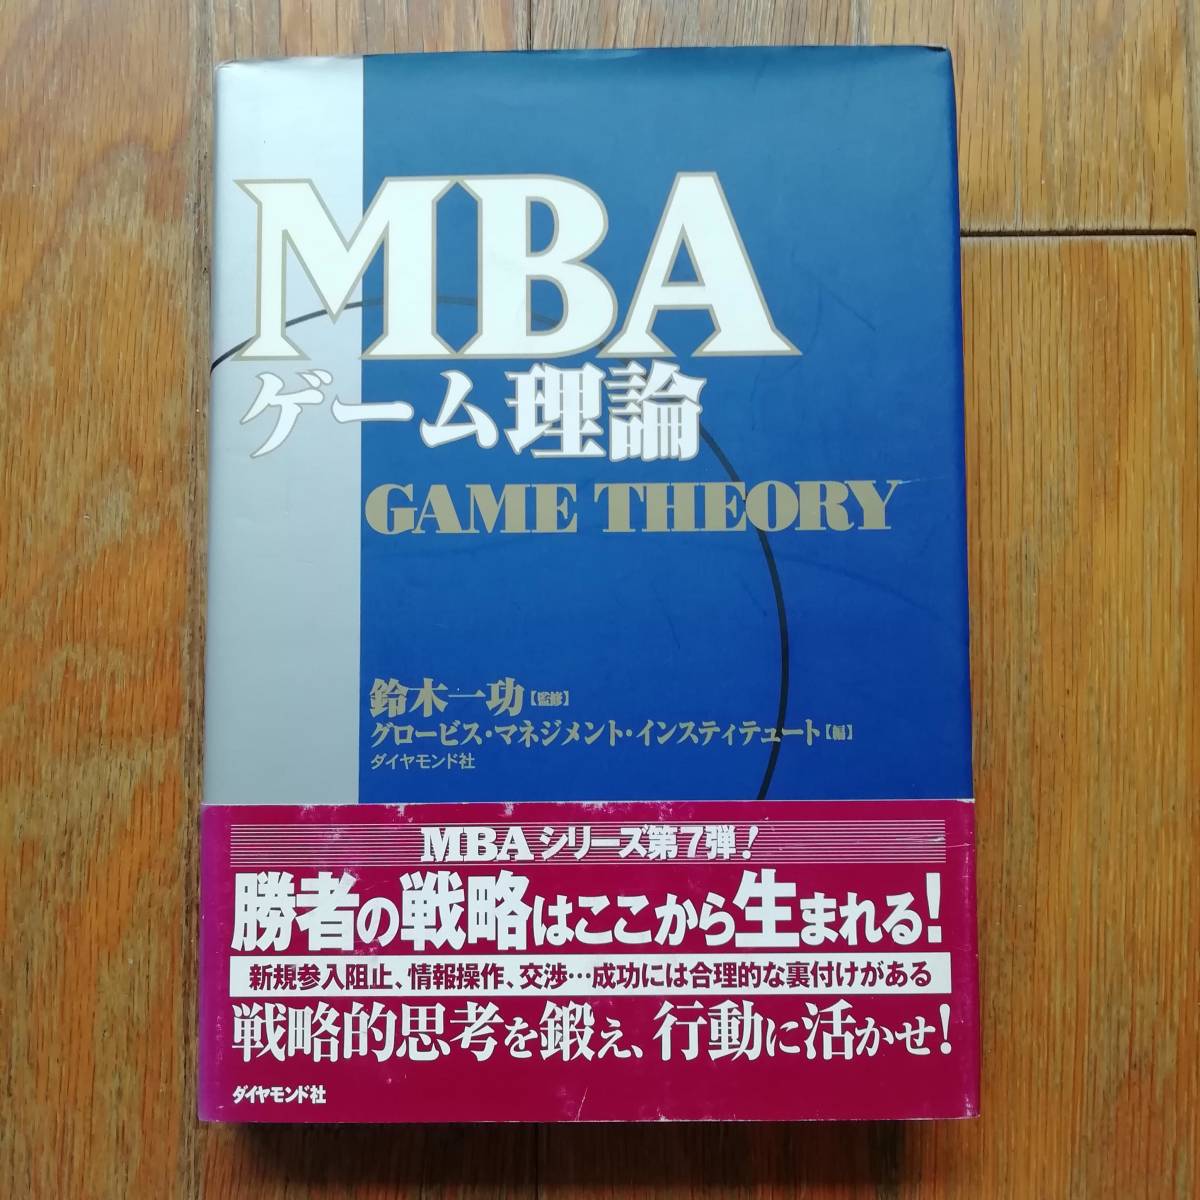 MBA ゲーム理論 - ビジネス